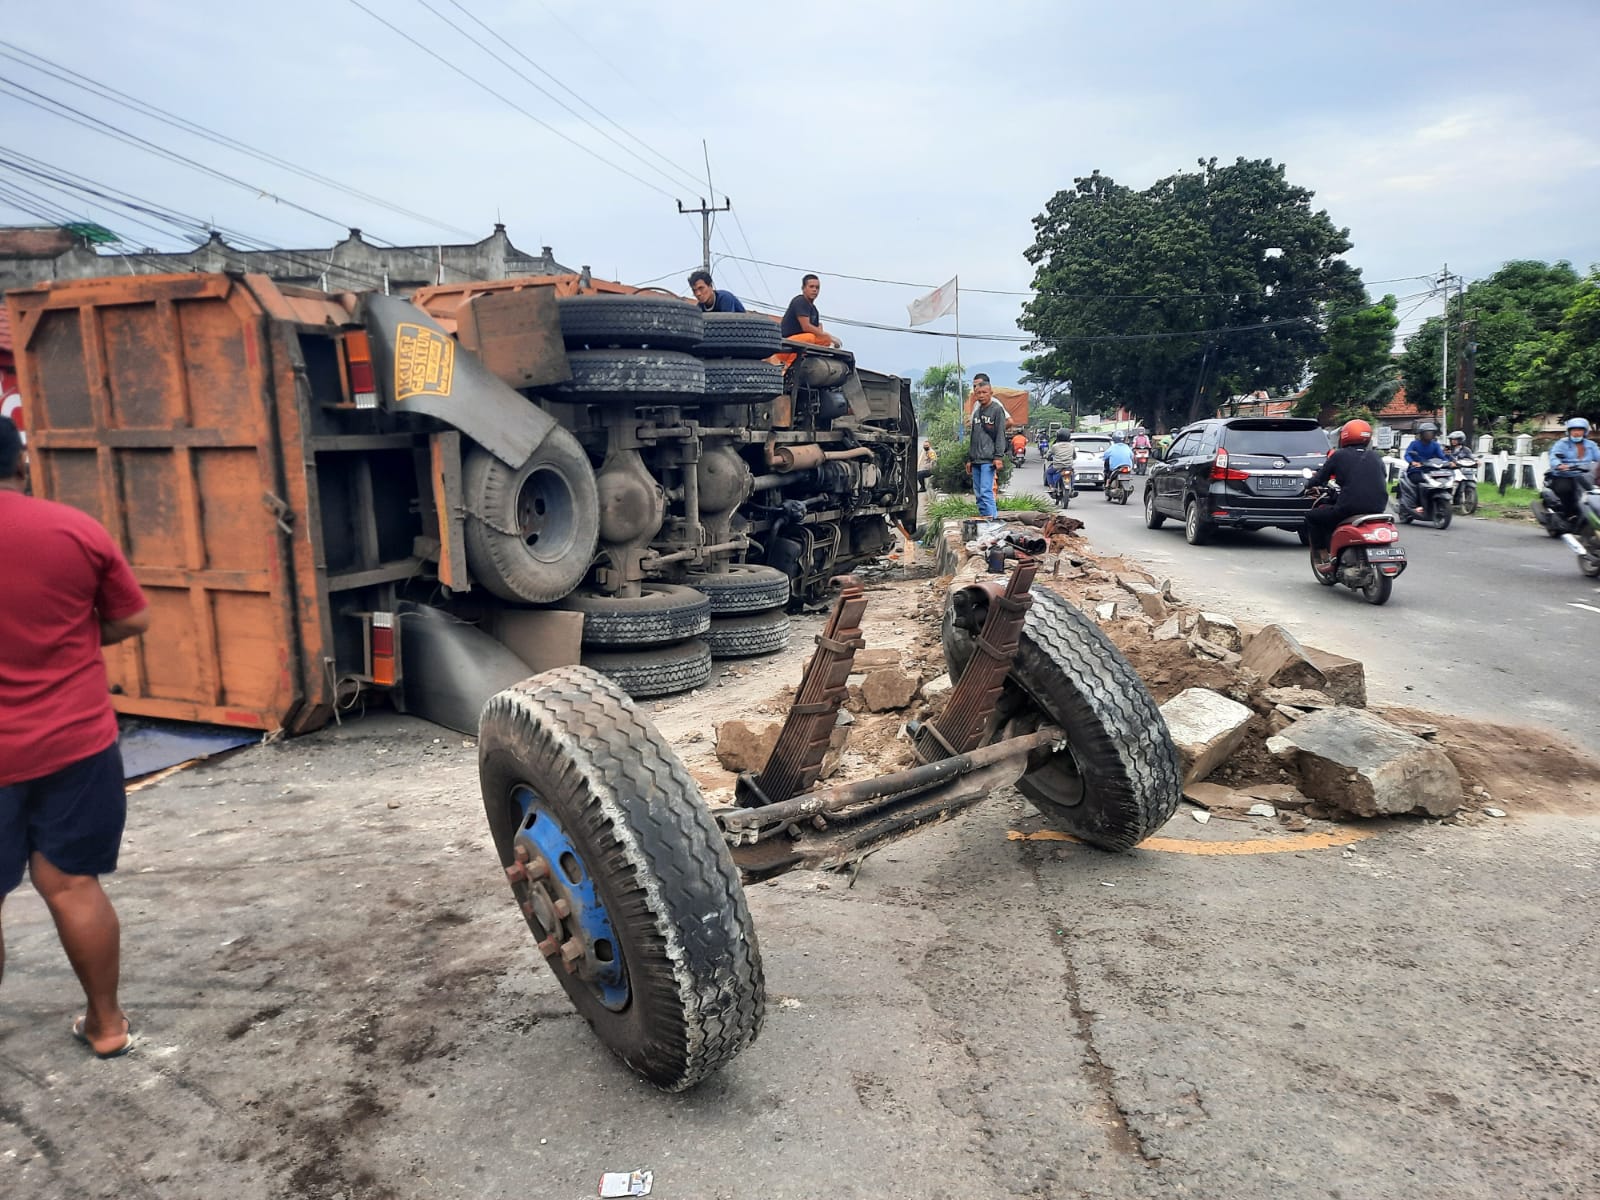 Truk Tronton Kecelakaan di Klangenan, Pengemudi Baru 17 Tahun